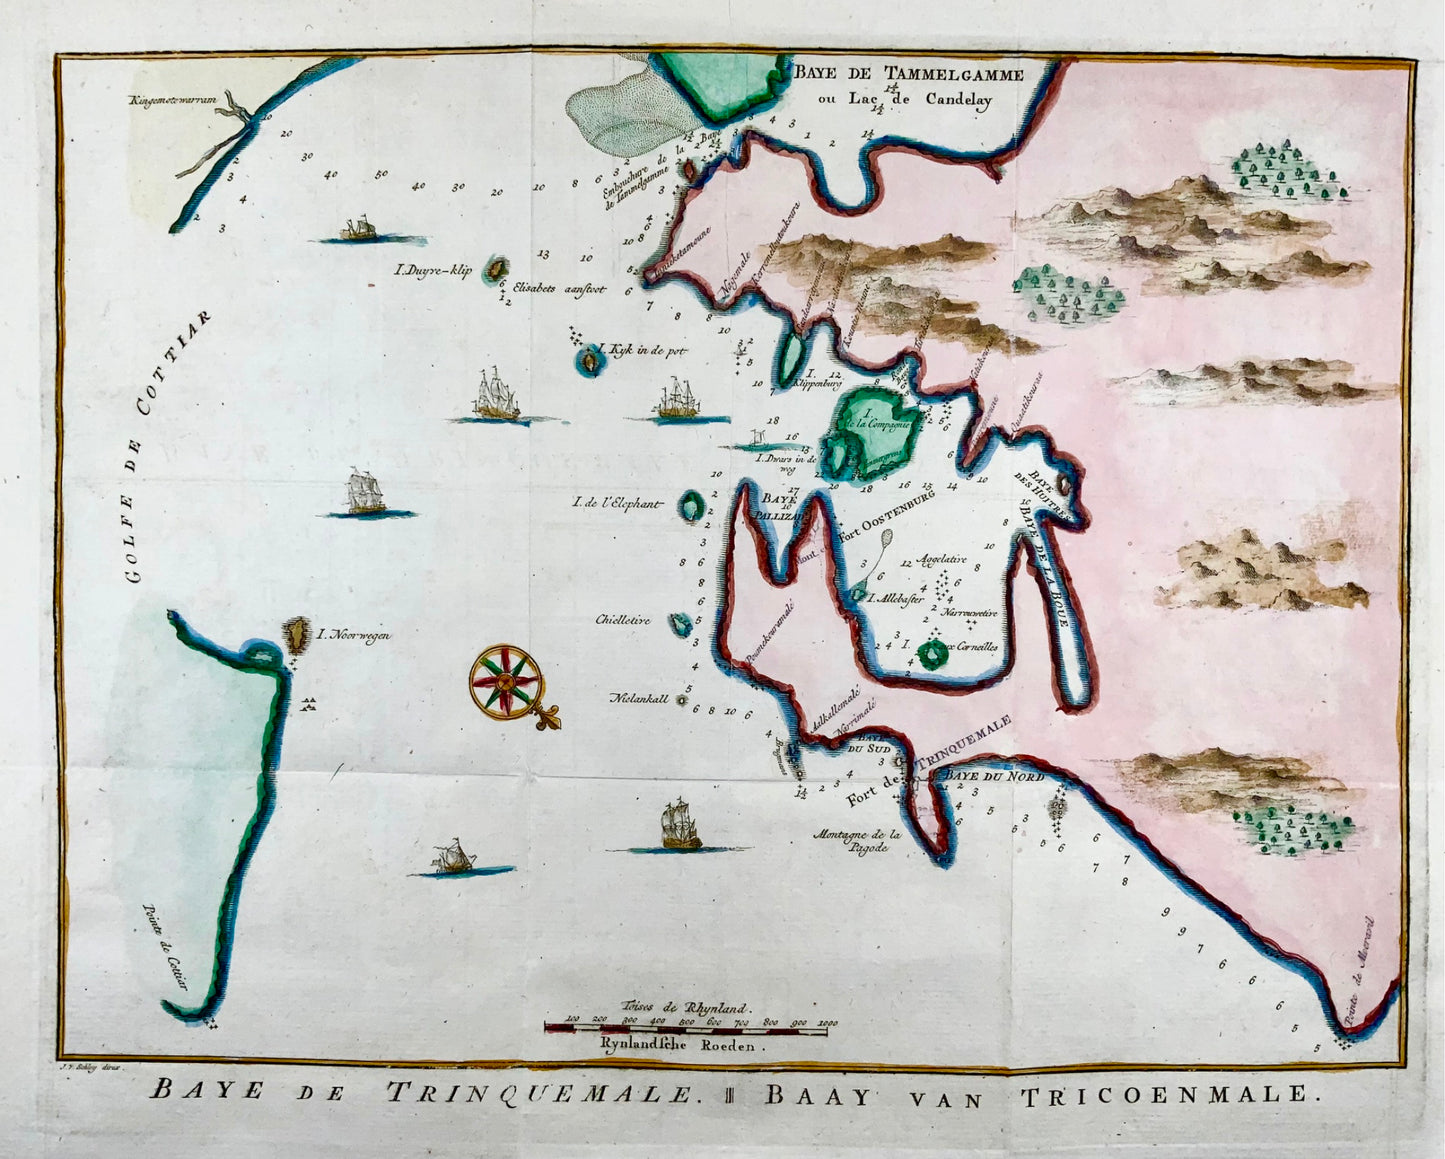 1770 J.V. Schley, Sri Lanka, Ceylon, Trincomalee, large copper engraving, map